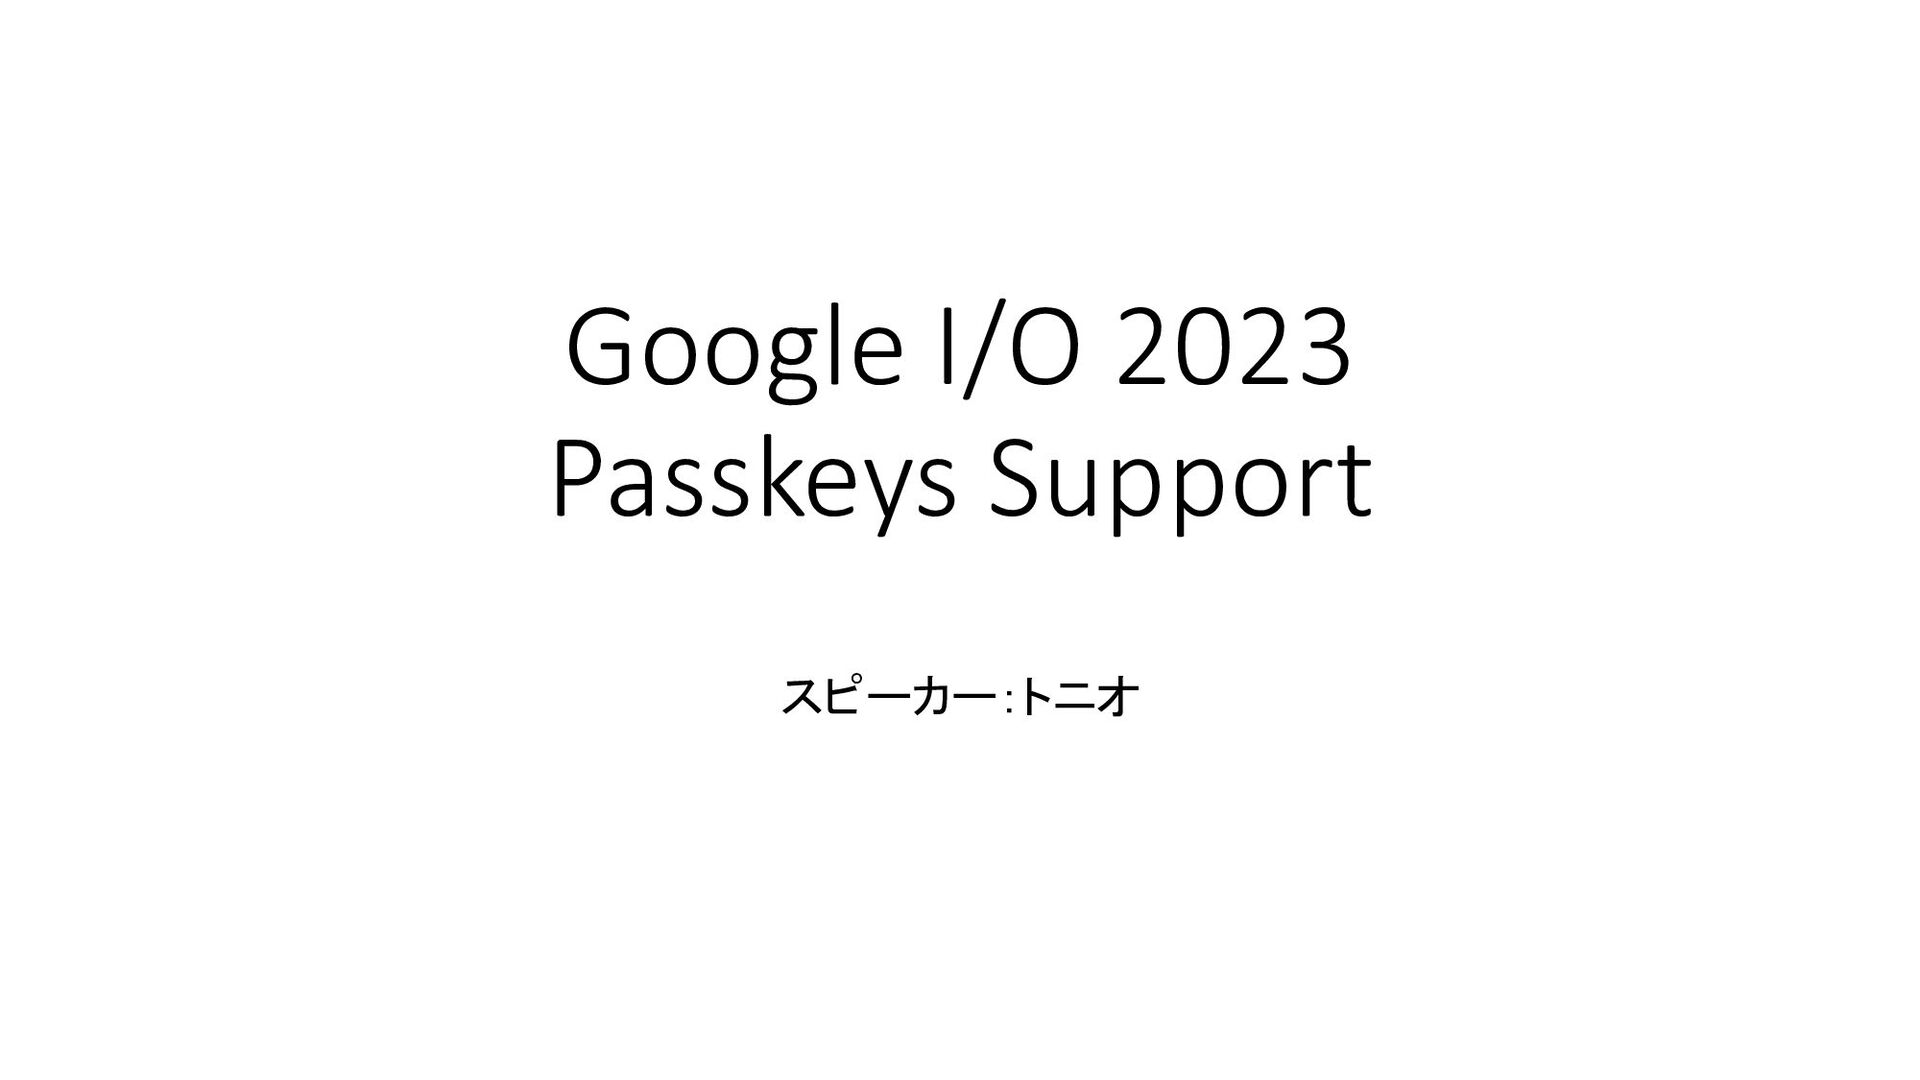 Slide Top: Google I/O 2023 Passkeys Support